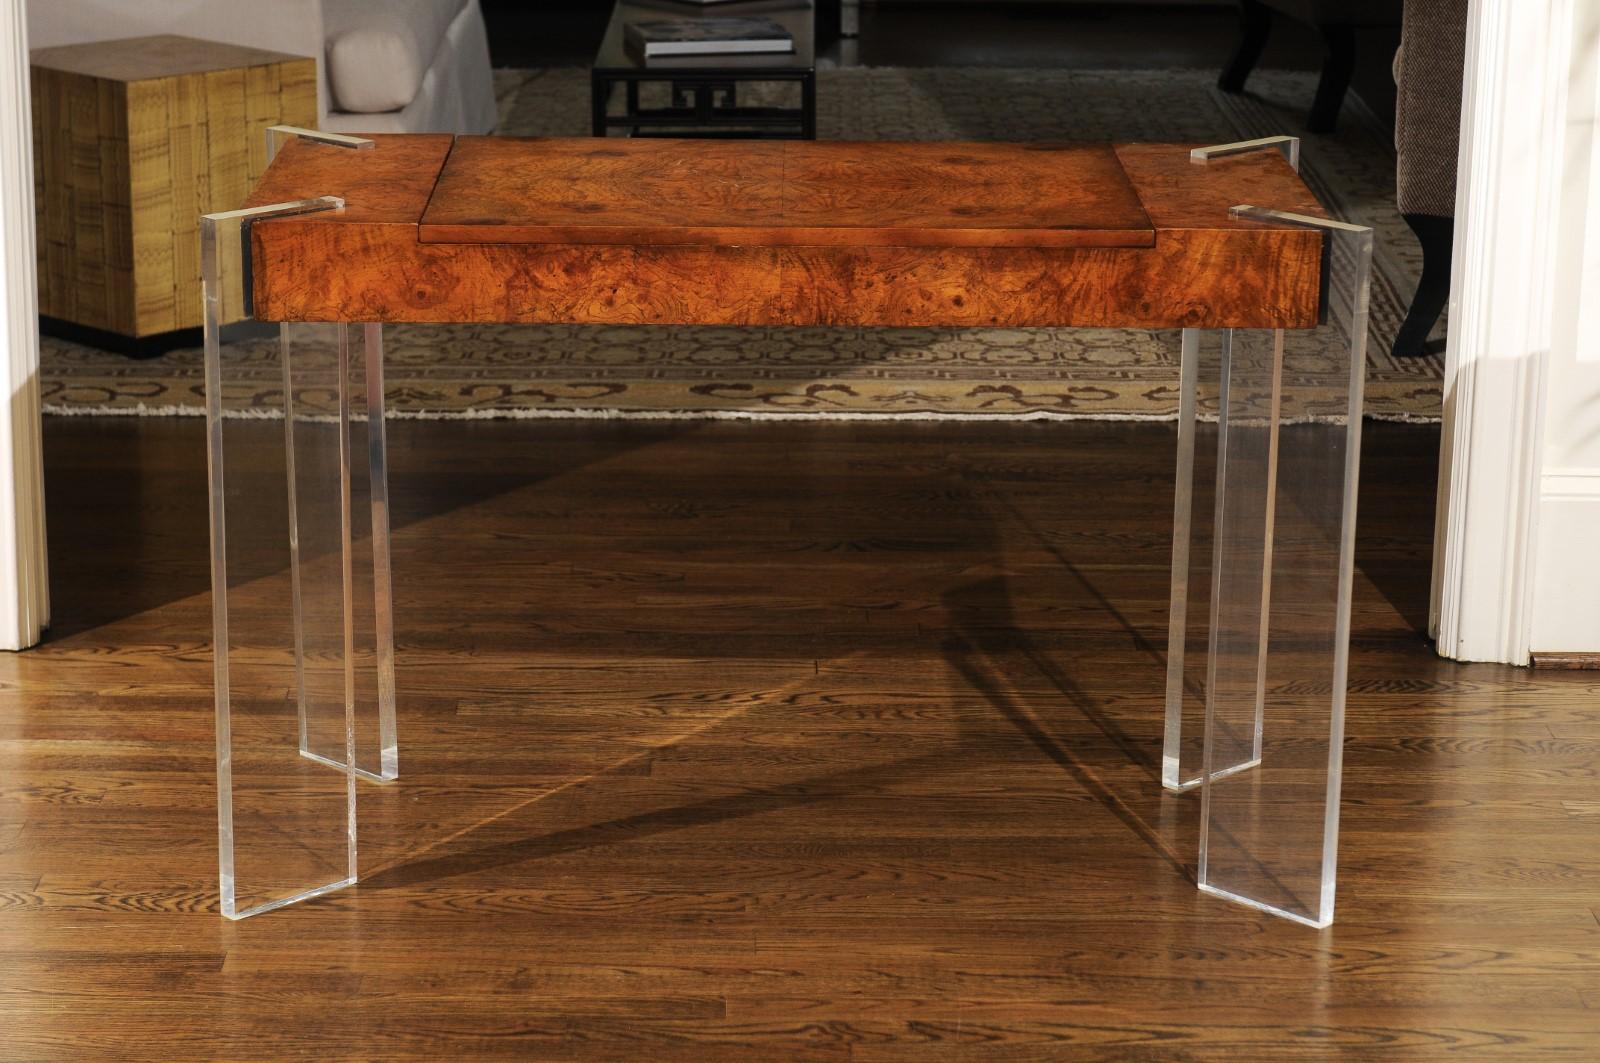 Ein fabelhafter restaurierter Mehrzwecktisch, der als Konsole, Schreibtisch und Spieltisch dienen kann, um 1975. Fachmännisch gefertigte Hartholzkonstruktion, furniert in buchstabiertem Olivenholz, mit eingelassenen Beinen aus dicken Brettern aus